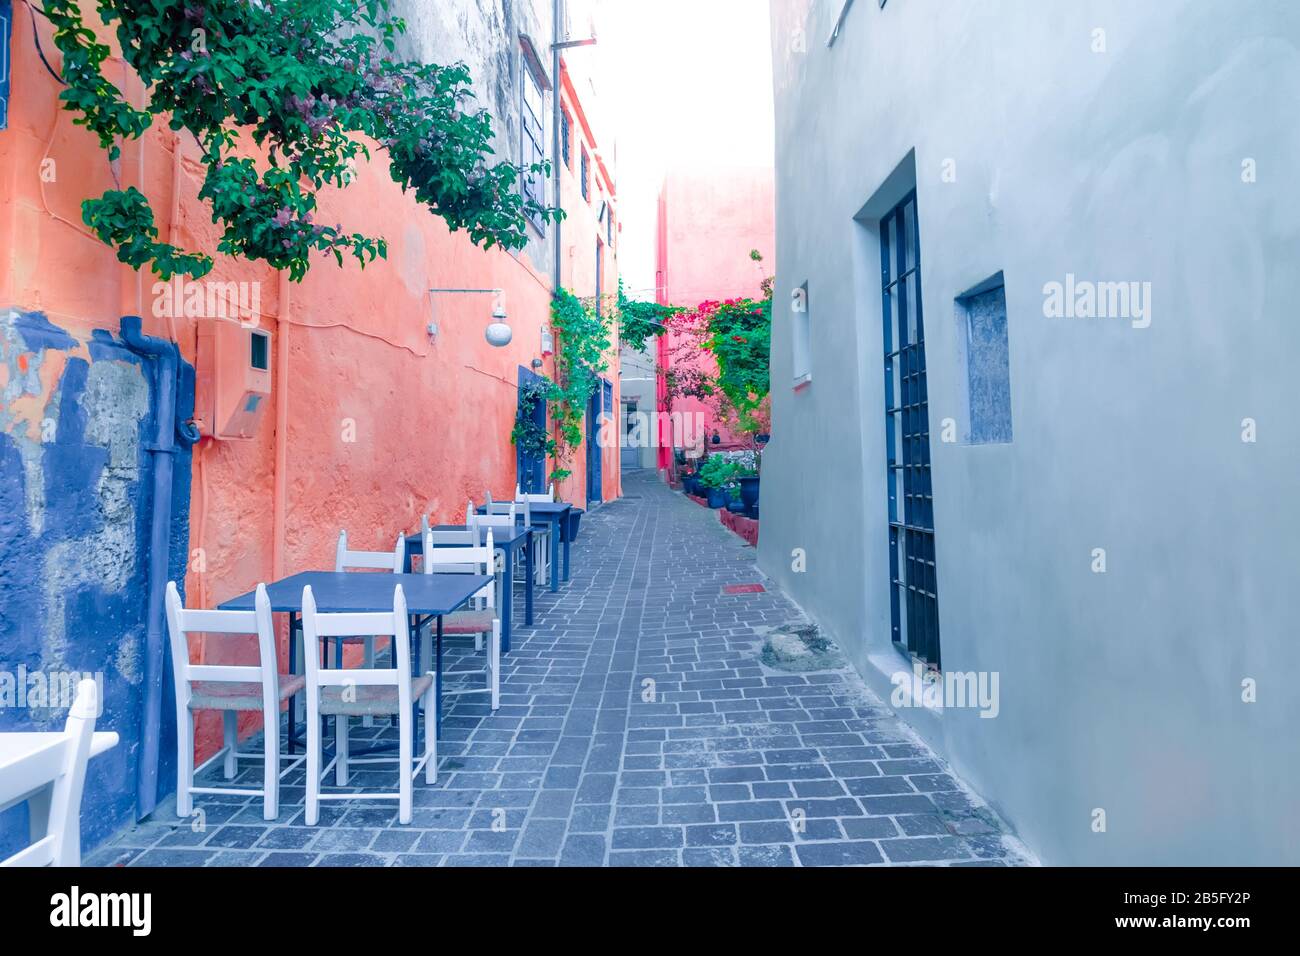 Café und Restaurants in den faszinierenden engen Gassen des beliebten Reiseziels auf der Insel Crete. Griechenland. Traditionelle Architektur und Farben der mediterranen ci Stockfoto